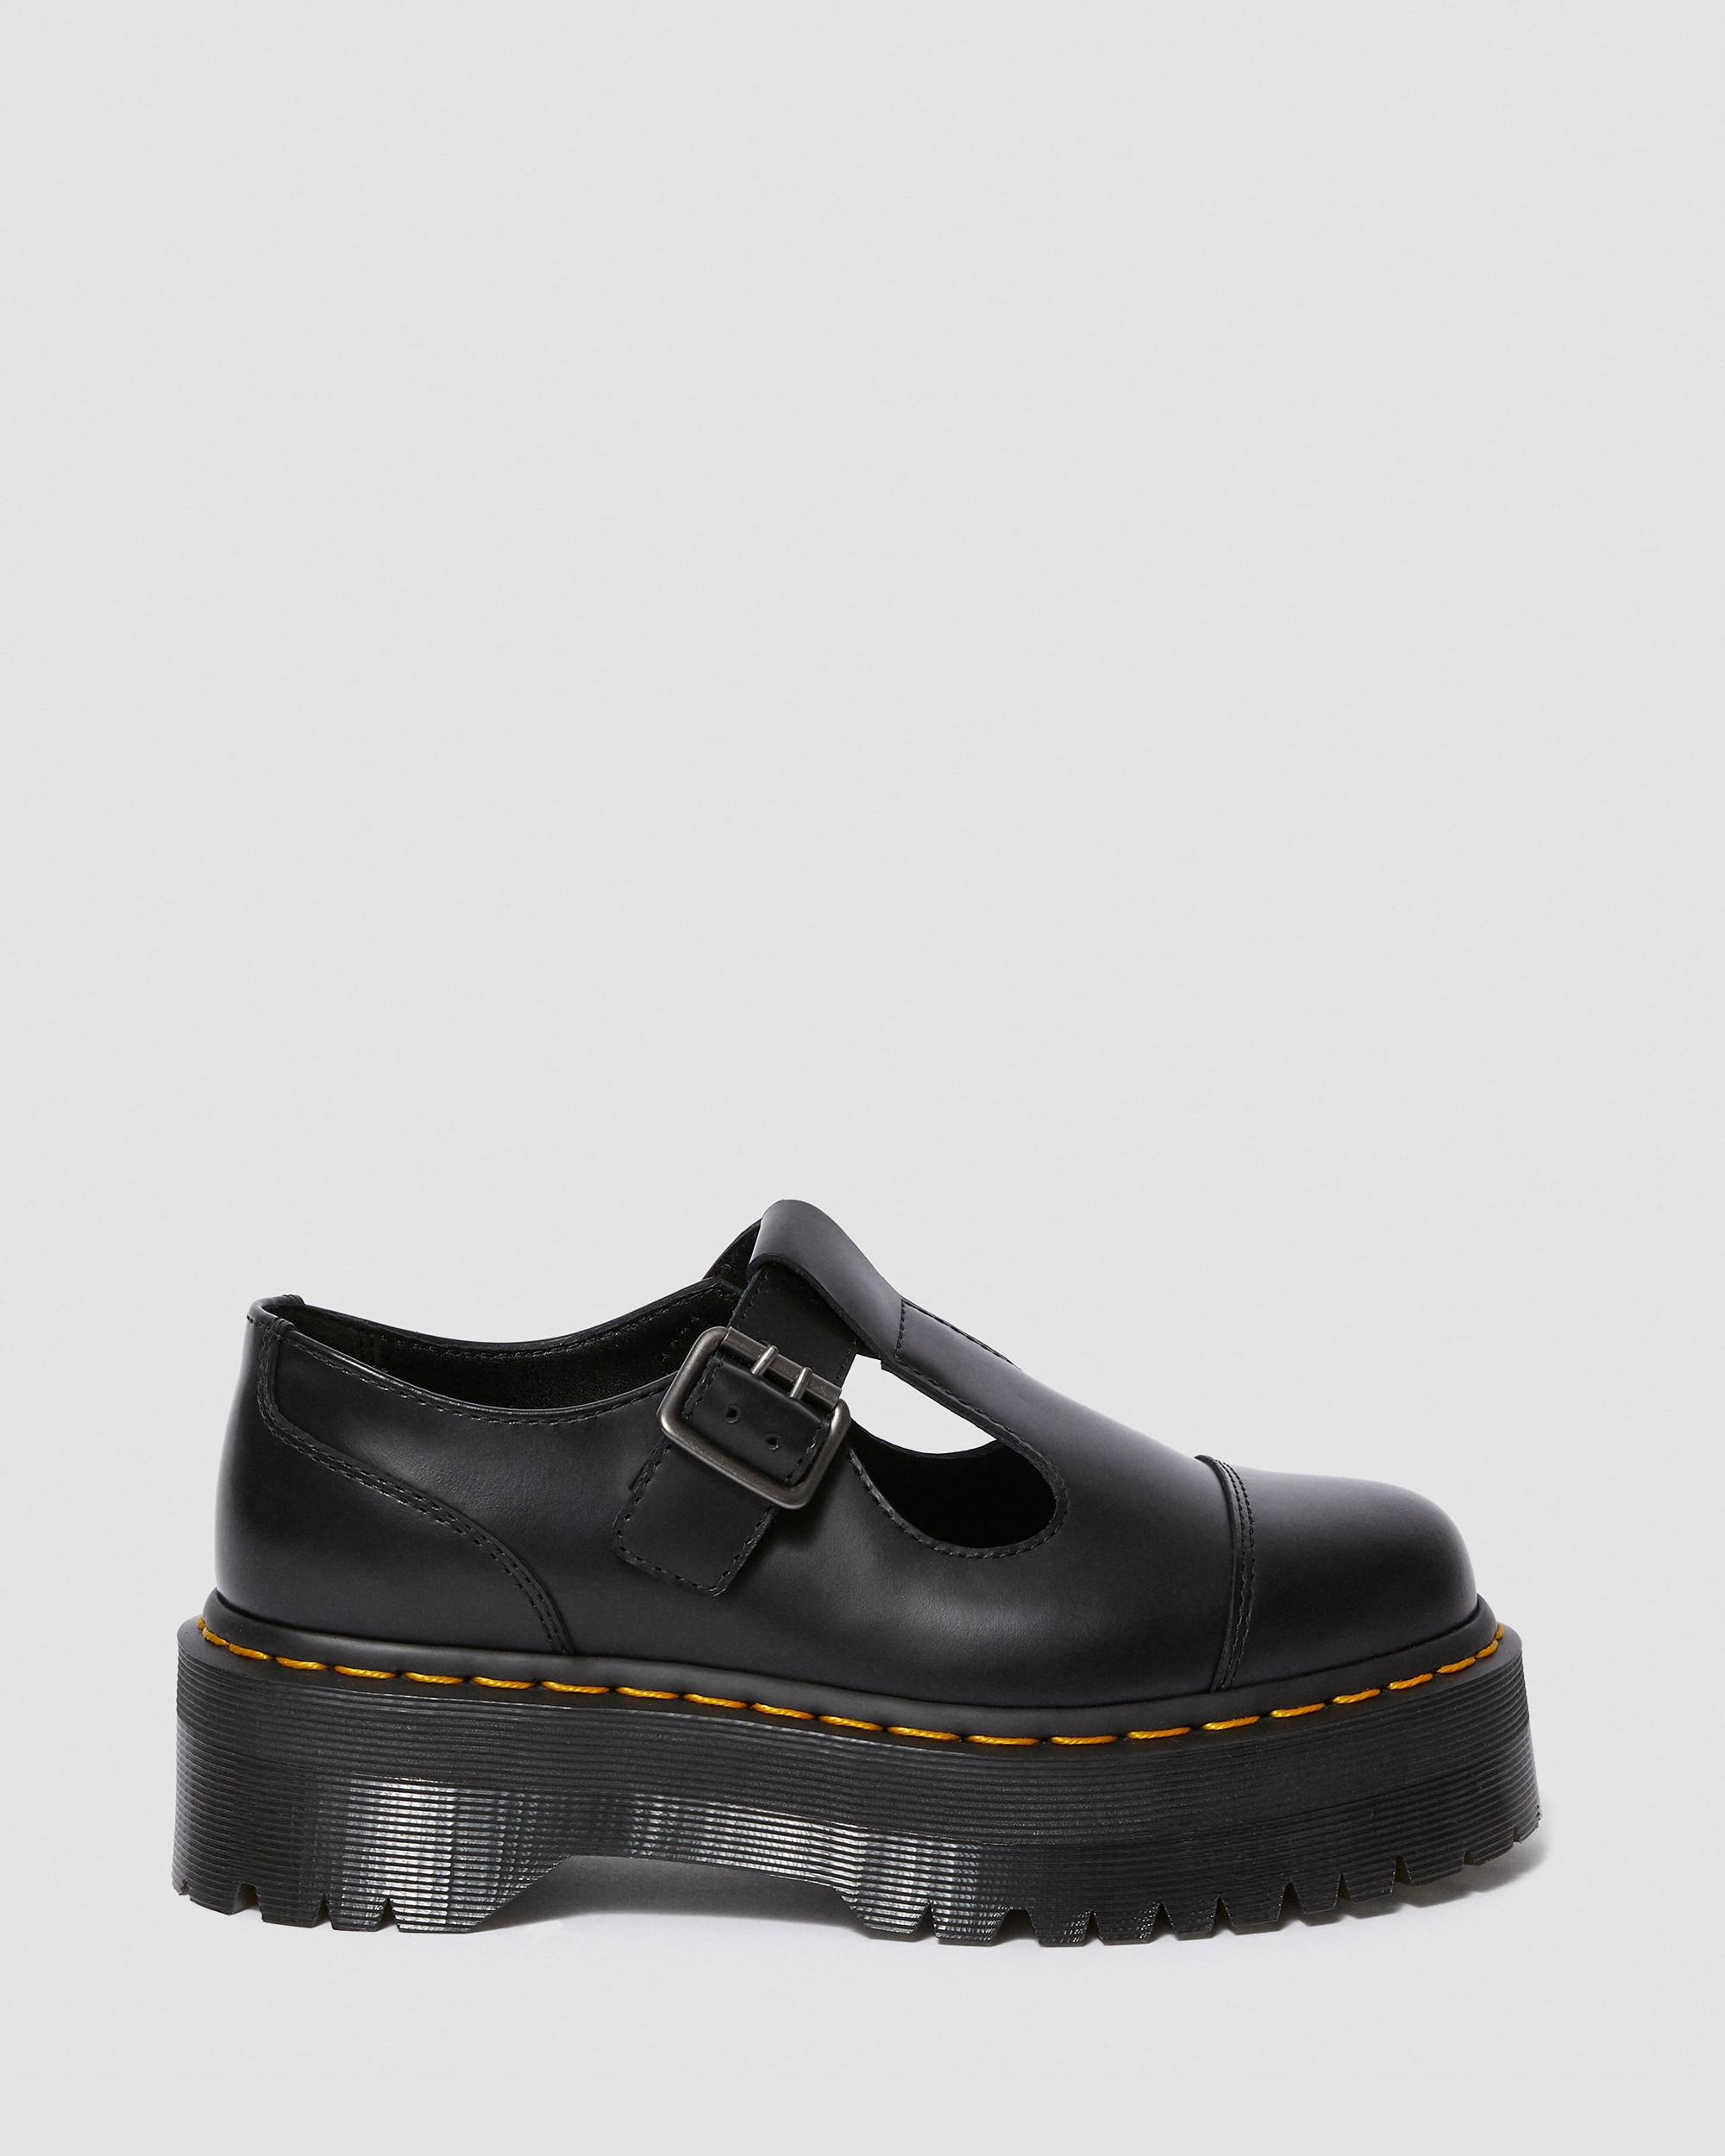 Bethan Polished Smooth Leather Platform Shoes in Black | Dr. Martens